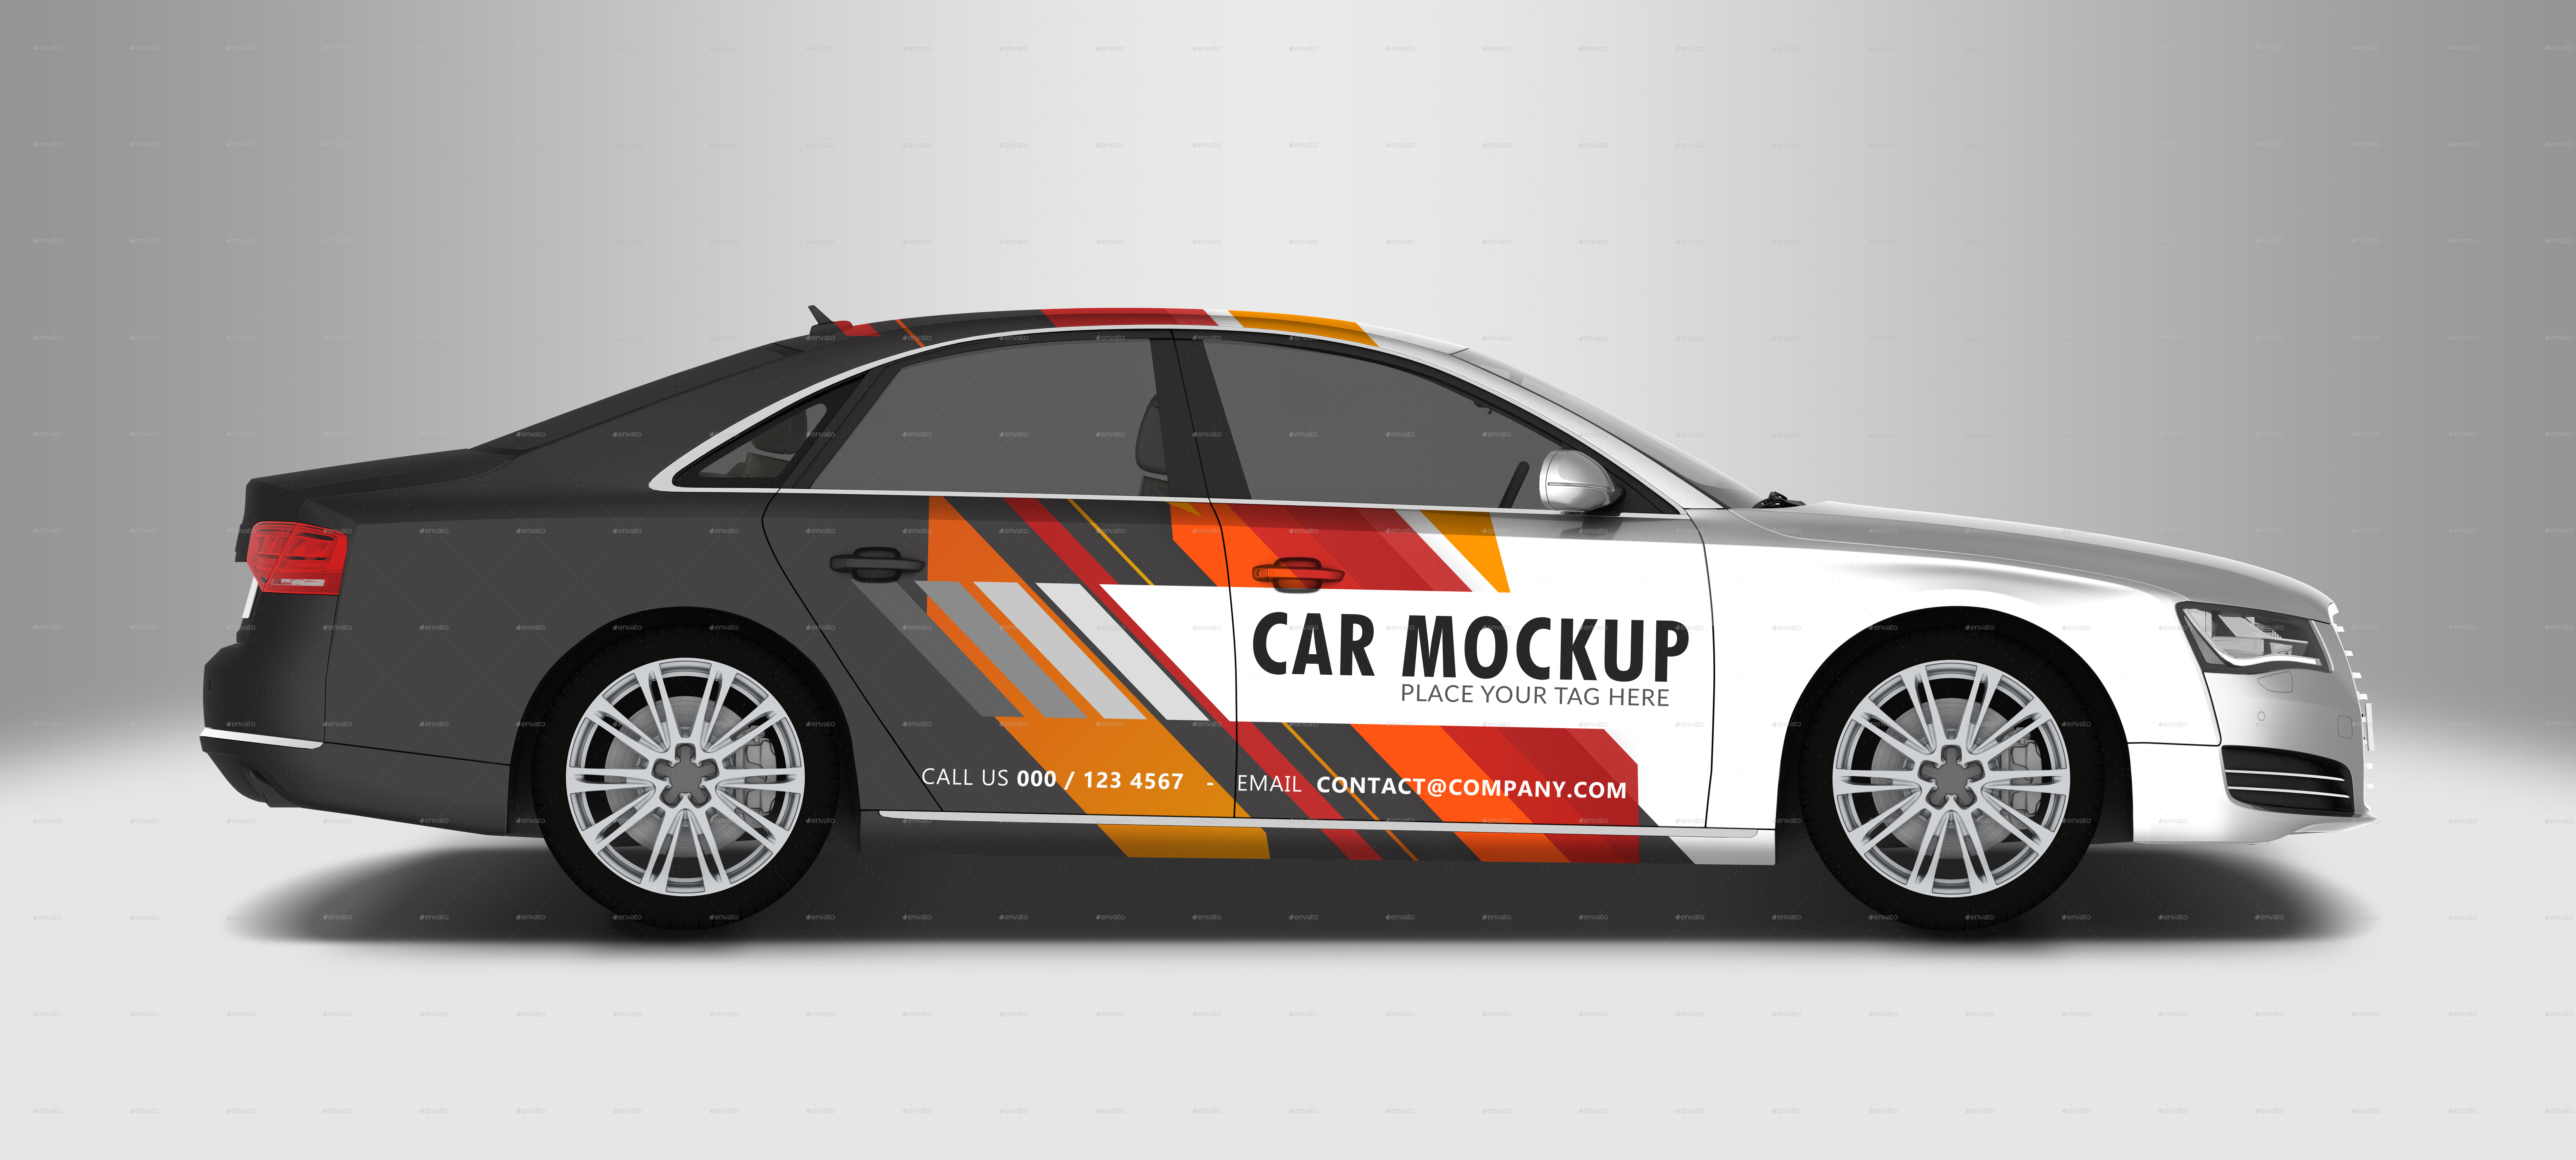 Car Mockup Based On Audi A8 - 5 In 1